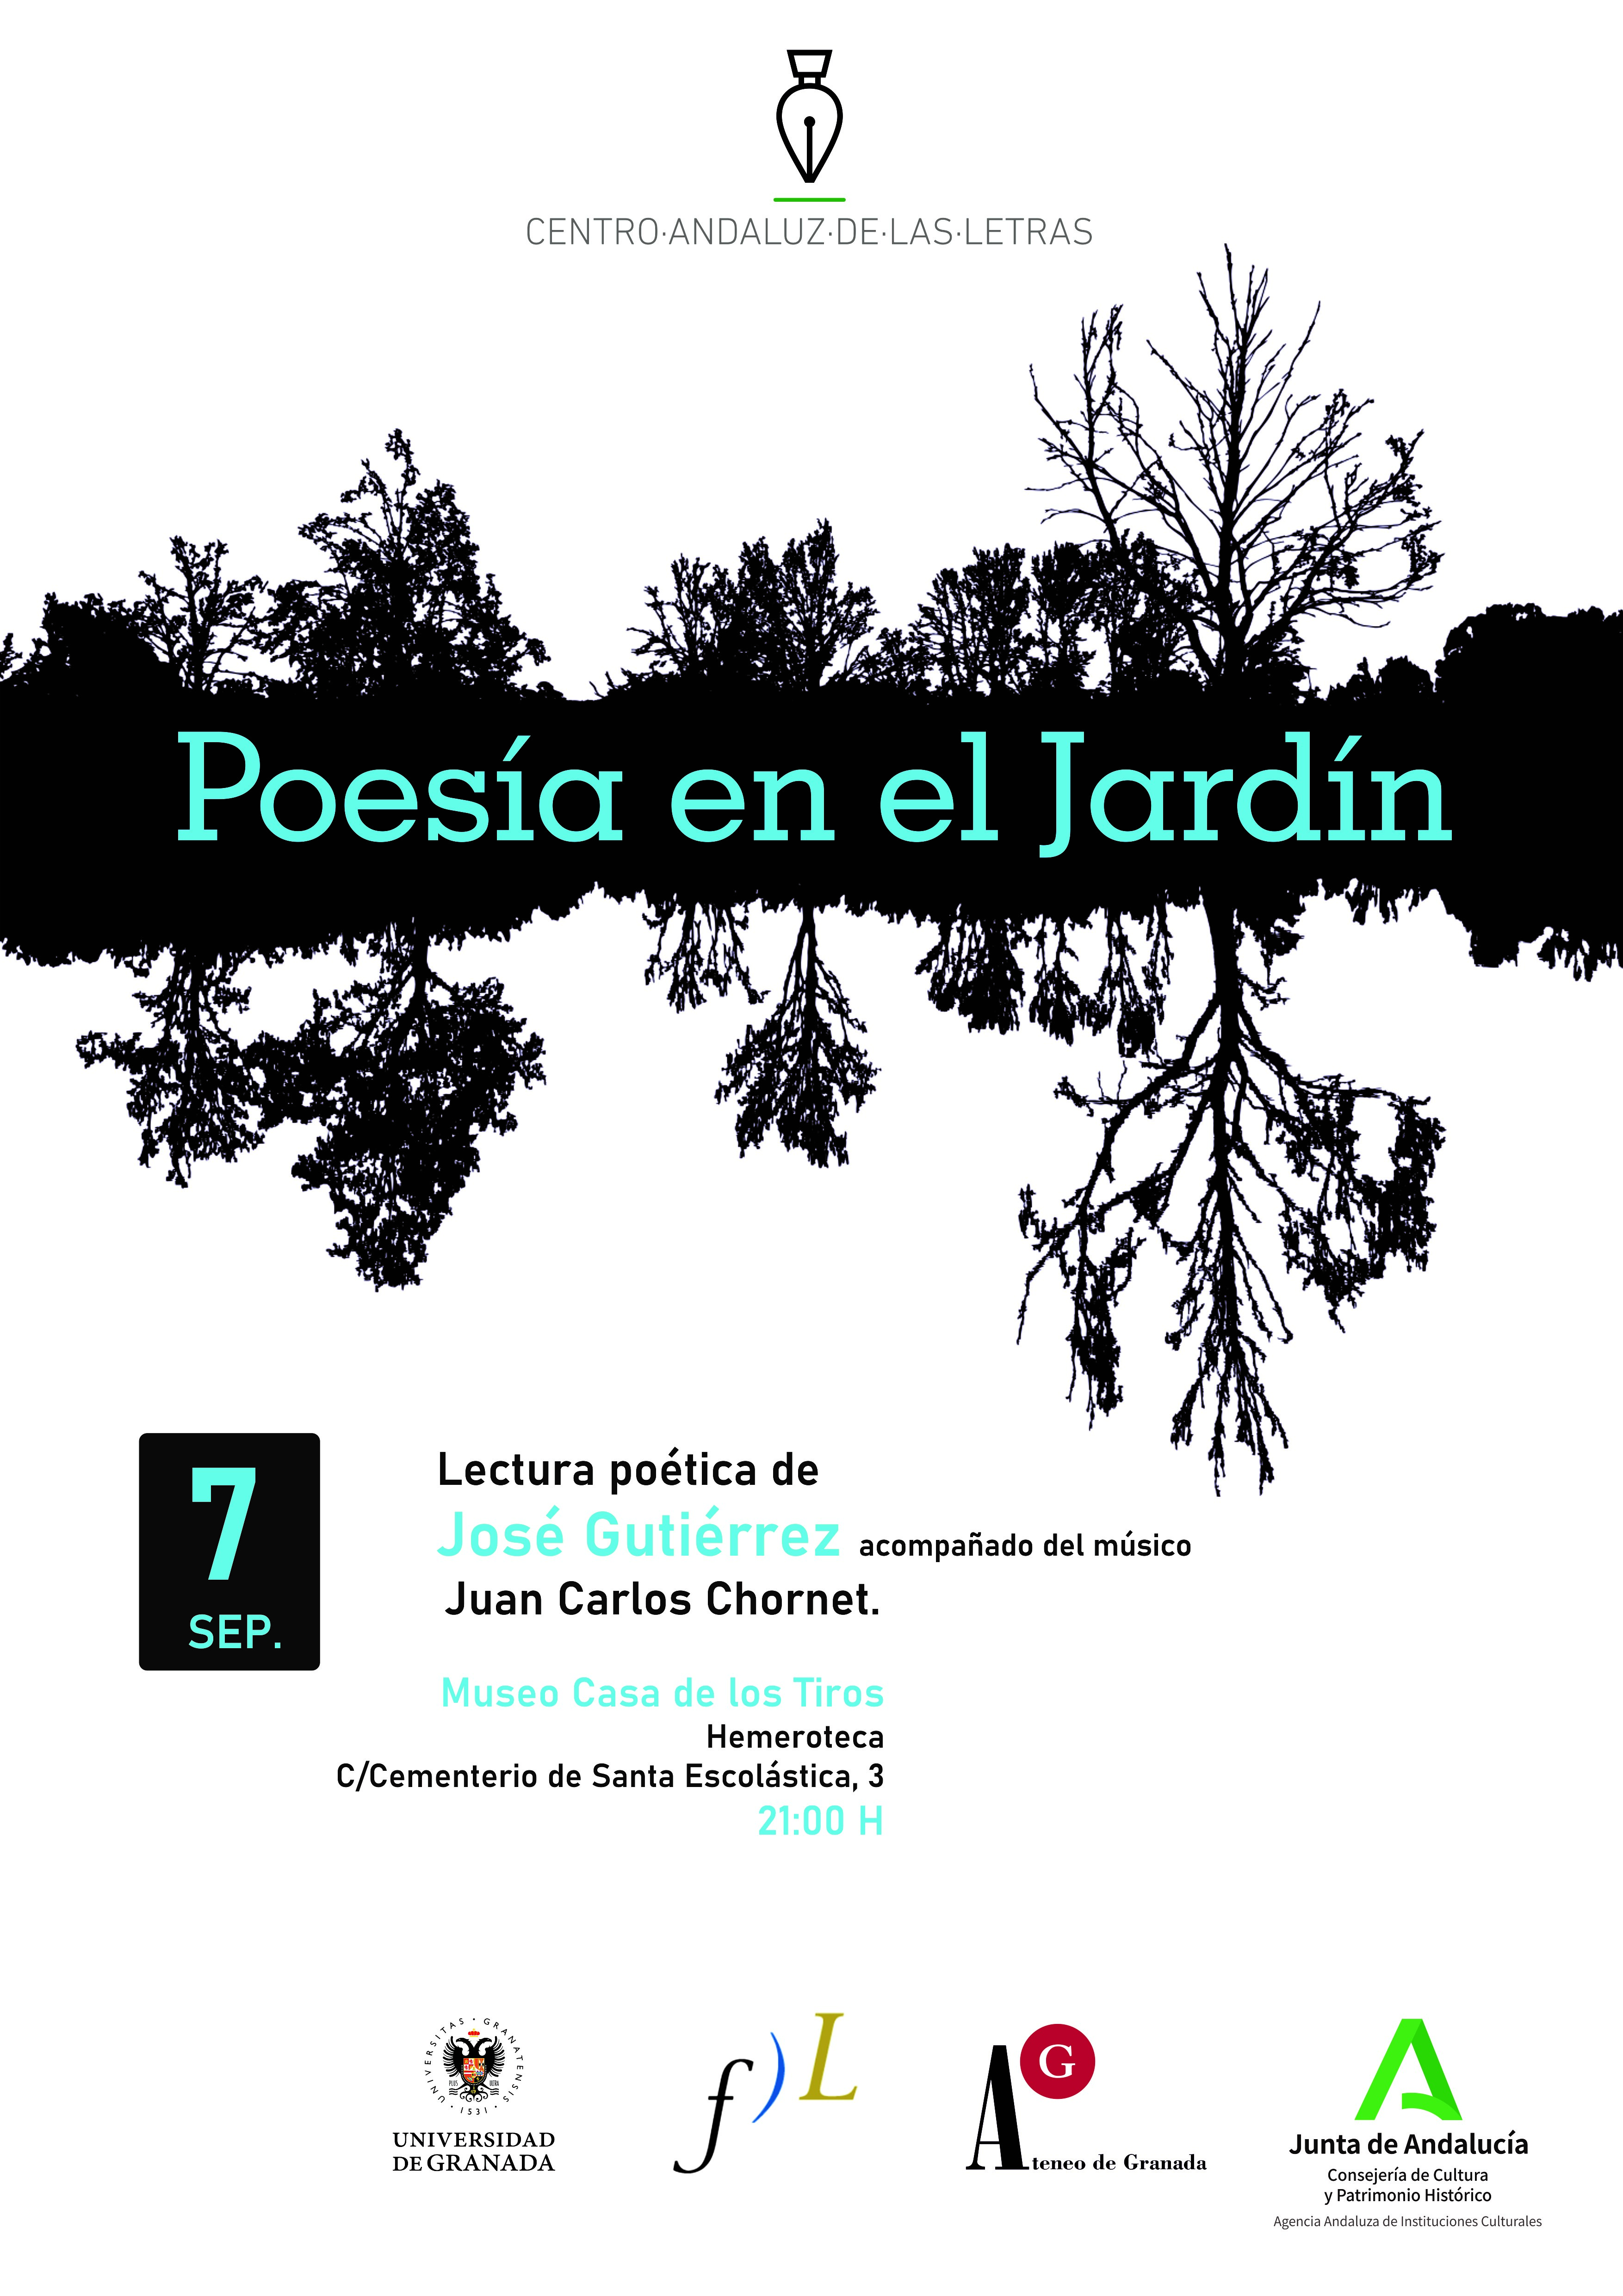 José Gutiérrez inaugura mañana el ciclo ‘Poesía en el Jardín’ junto al músico Juan Carlos Chornet